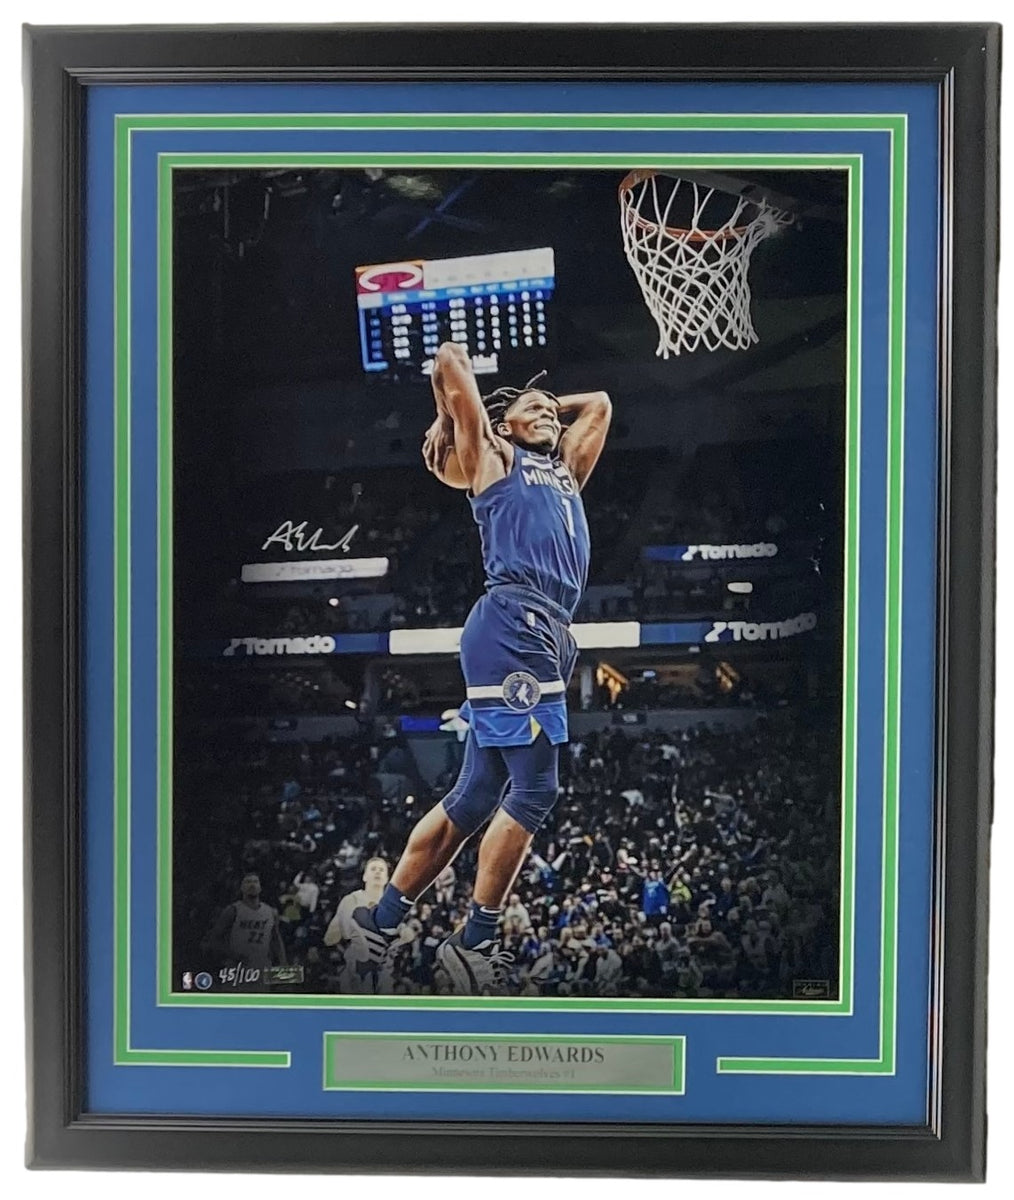 ANTHONY EDWARDS Timberwolves Framed 15 x 17 Game Used Basketball